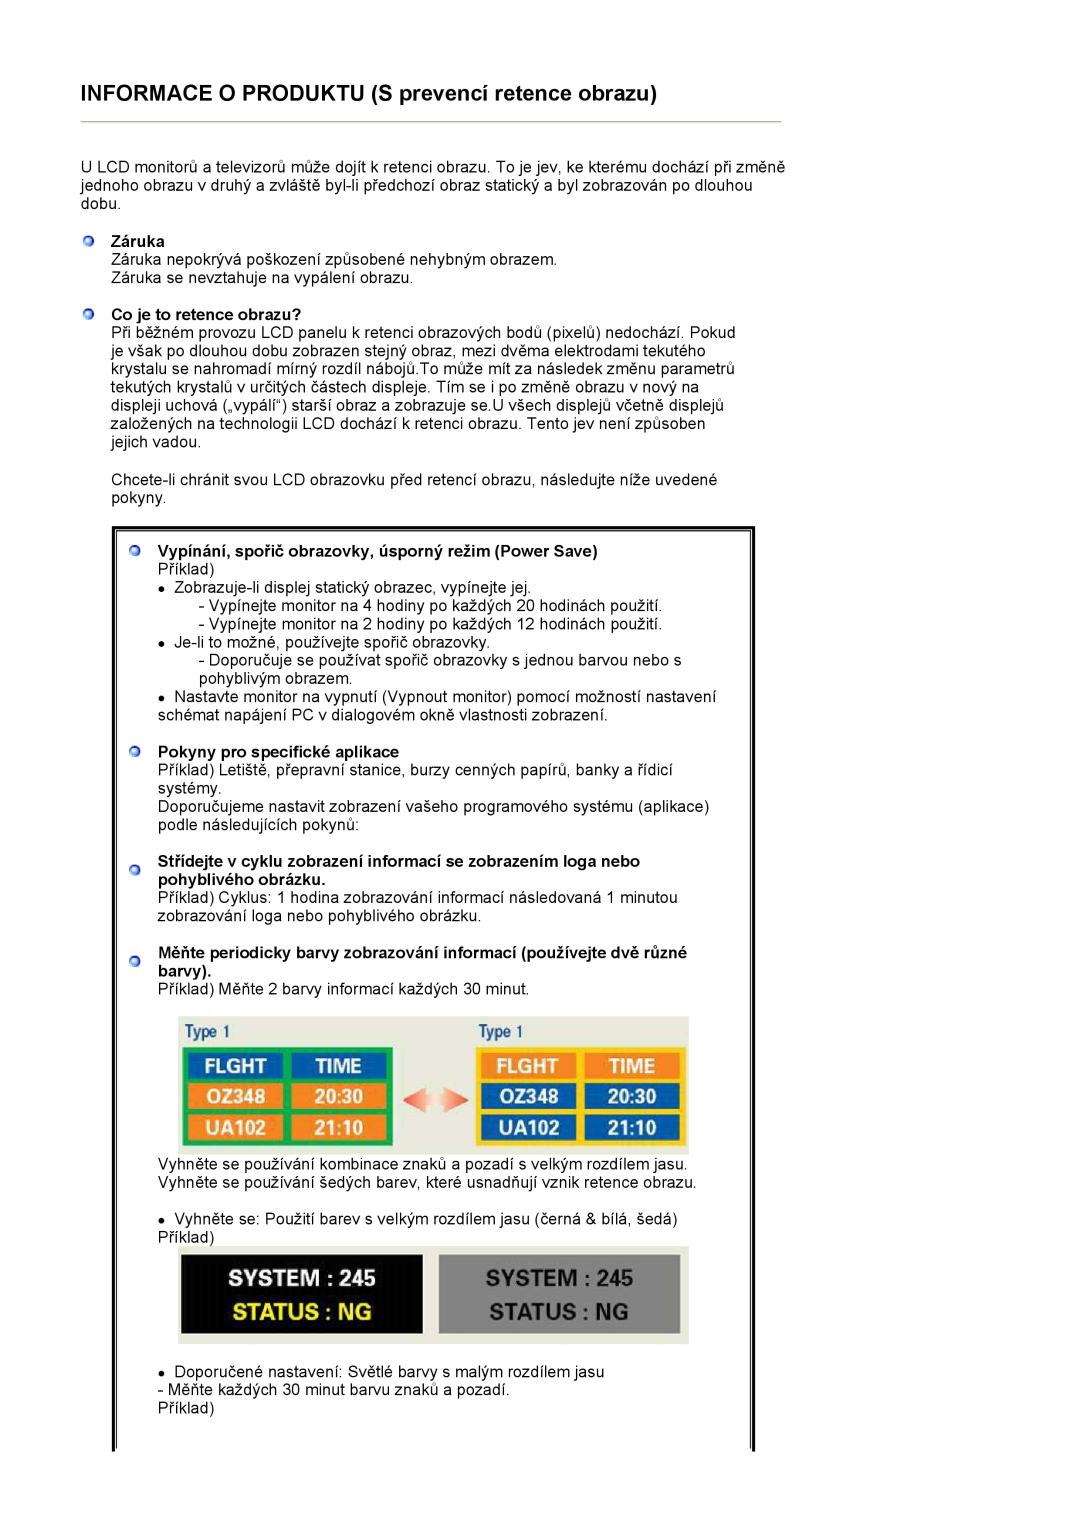 Samsung LS27HUBCBS/EDC manual Záruka, Co je to retence obrazu?, Vypínání, spořič obrazovky, úsporný režim Power Save 